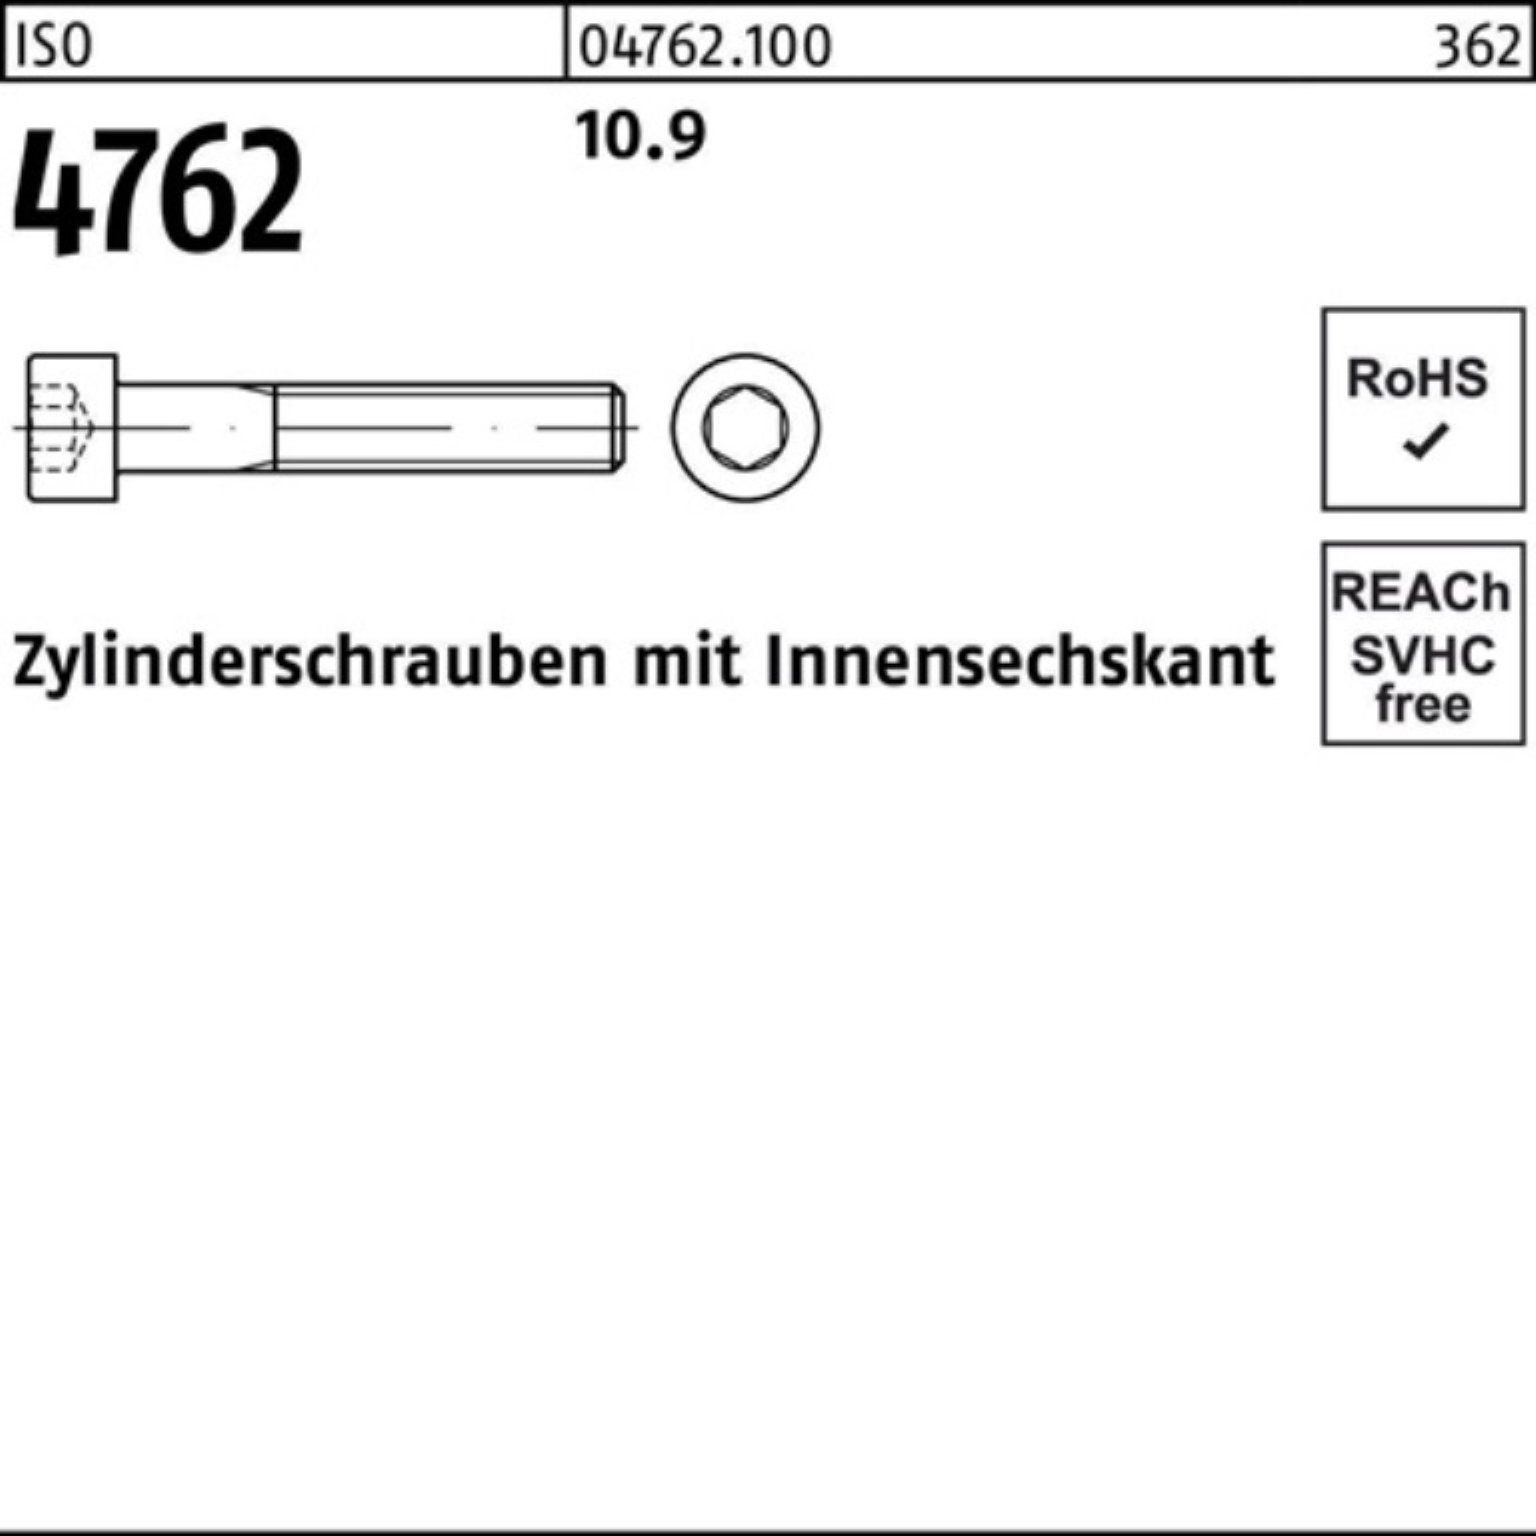 Stück ISO Zylinderschraube M12x 25 Innen-6kt 100er Zylinderschraube 4762 180 Pack Reyher 10.9